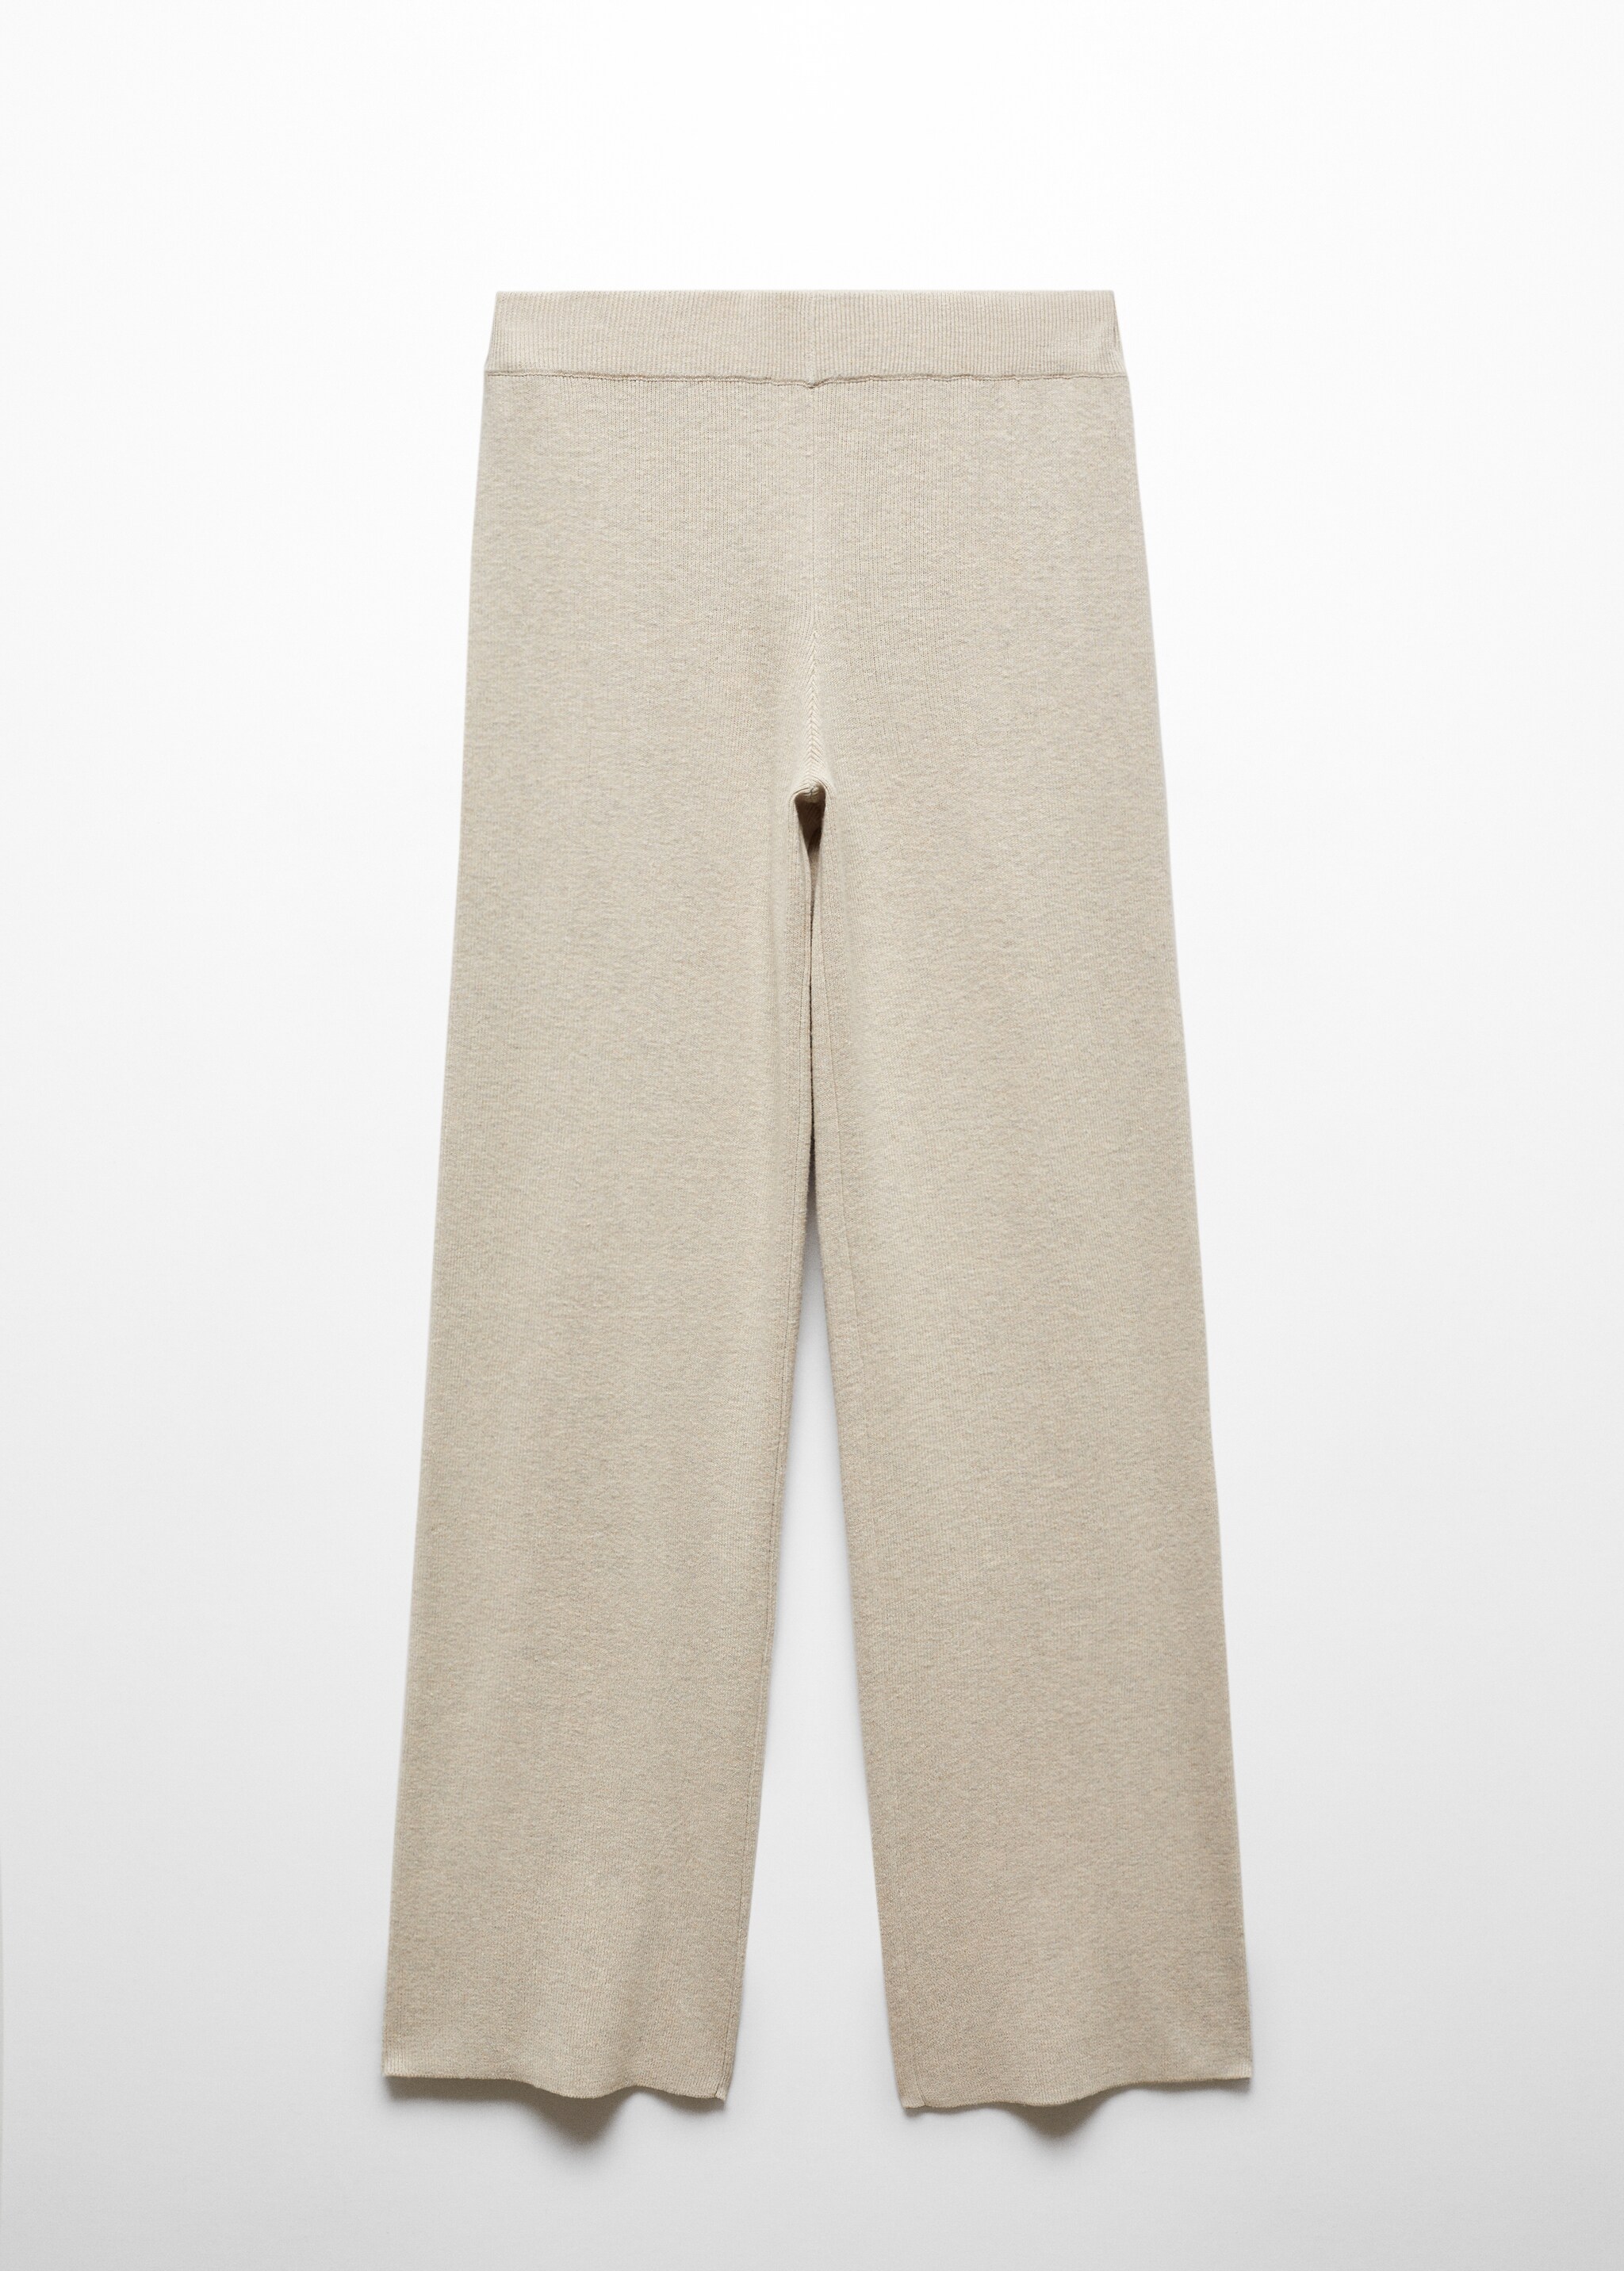 Pantalón punto algodón lino - Artículo sin modelo